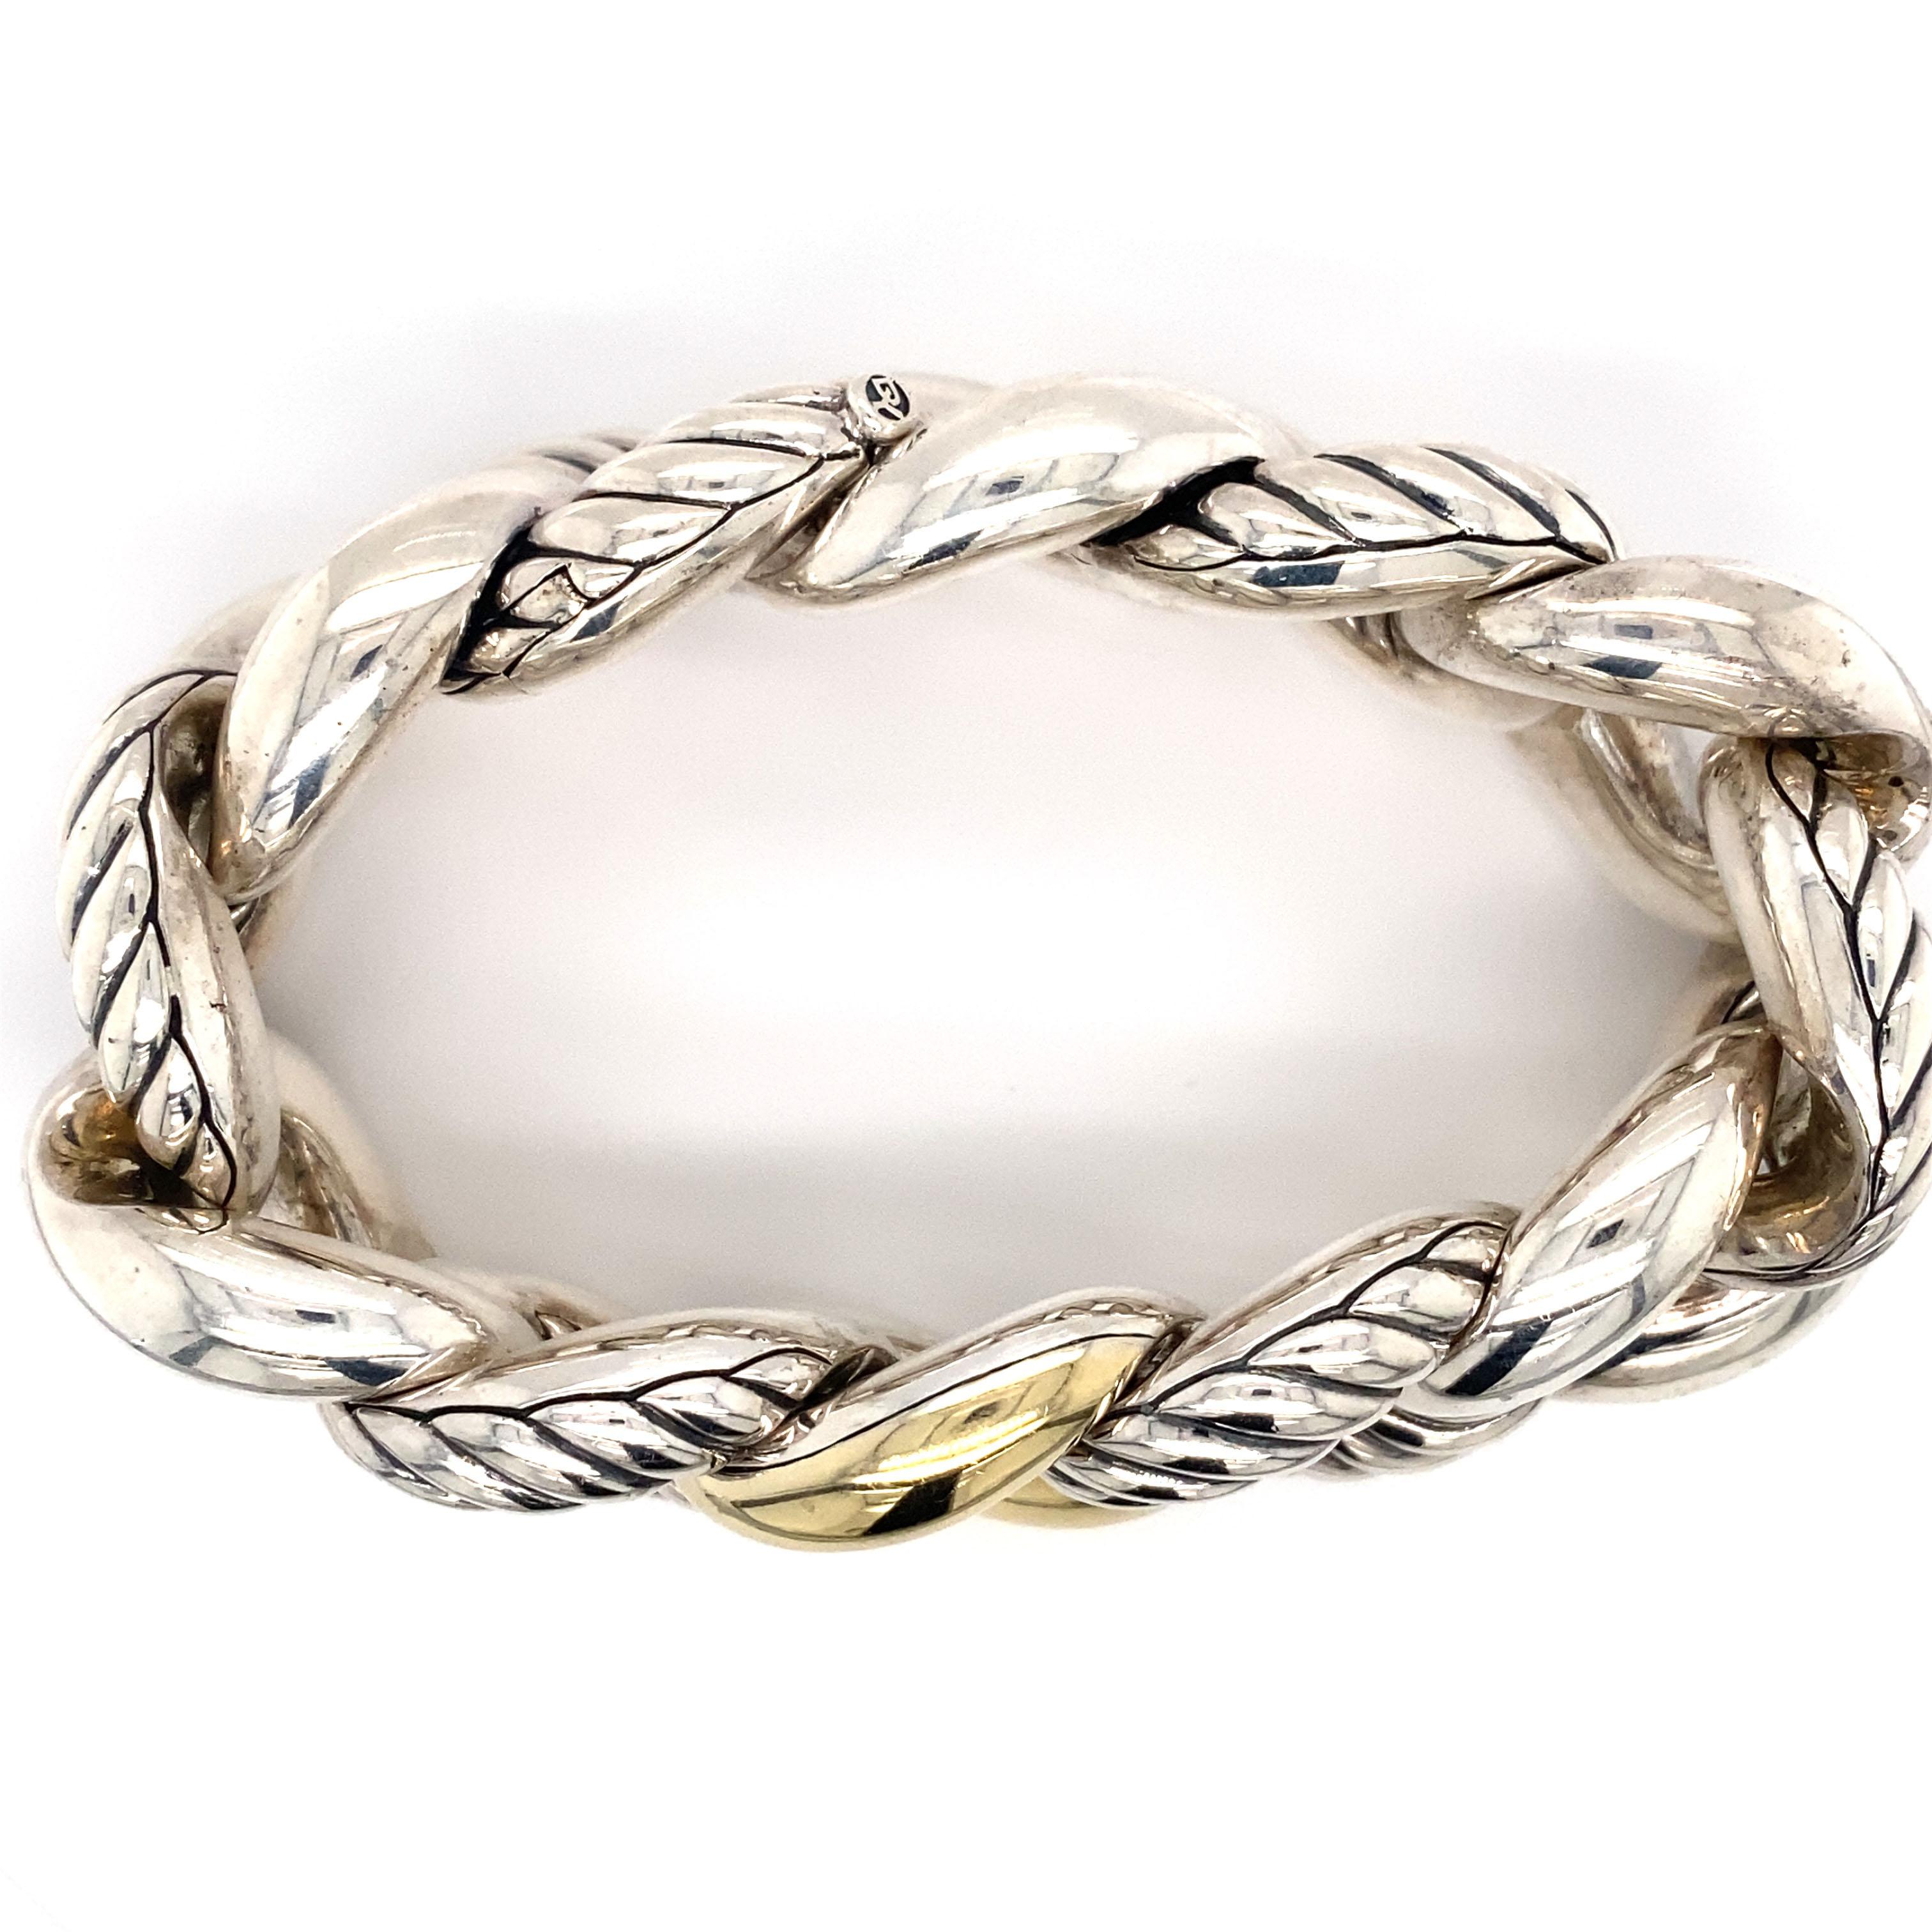 David Yurman Großes geschwungenes Gliederkette-Armband aus Sterlingsilber und 18 Karat Gold für Damen oder Herren